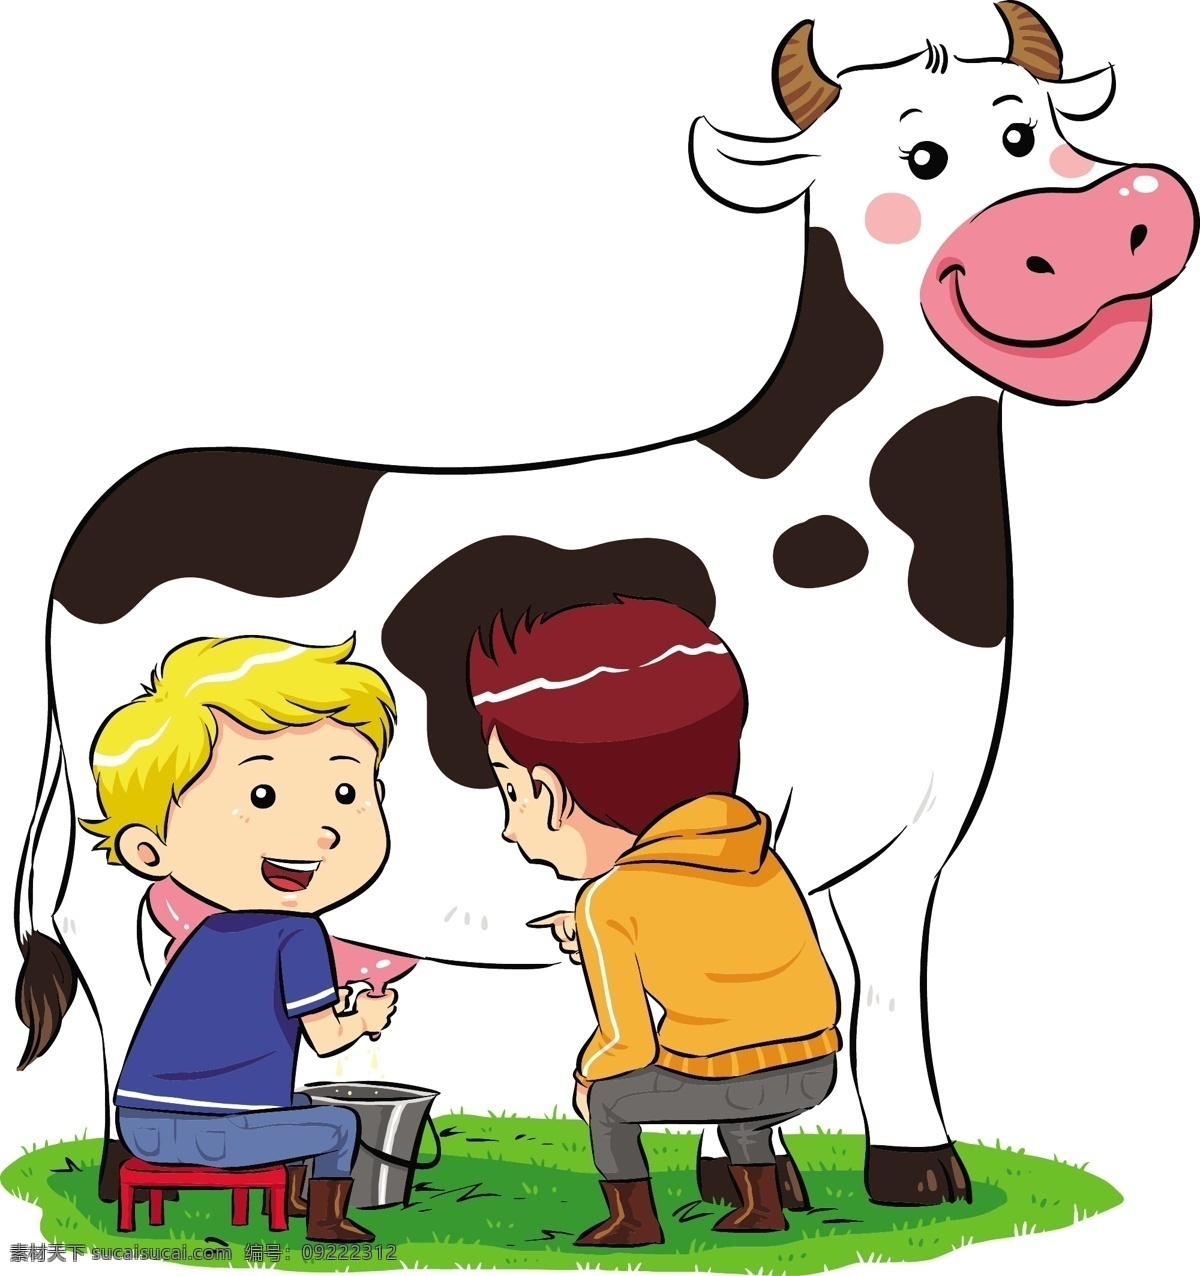 卡通 外国 小 男孩 挤 牛奶 漫画插画 卡通动物 卡通奶牛 挤牛奶 卡通小男孩子 小朋友 动物 漫画动物 平面素材